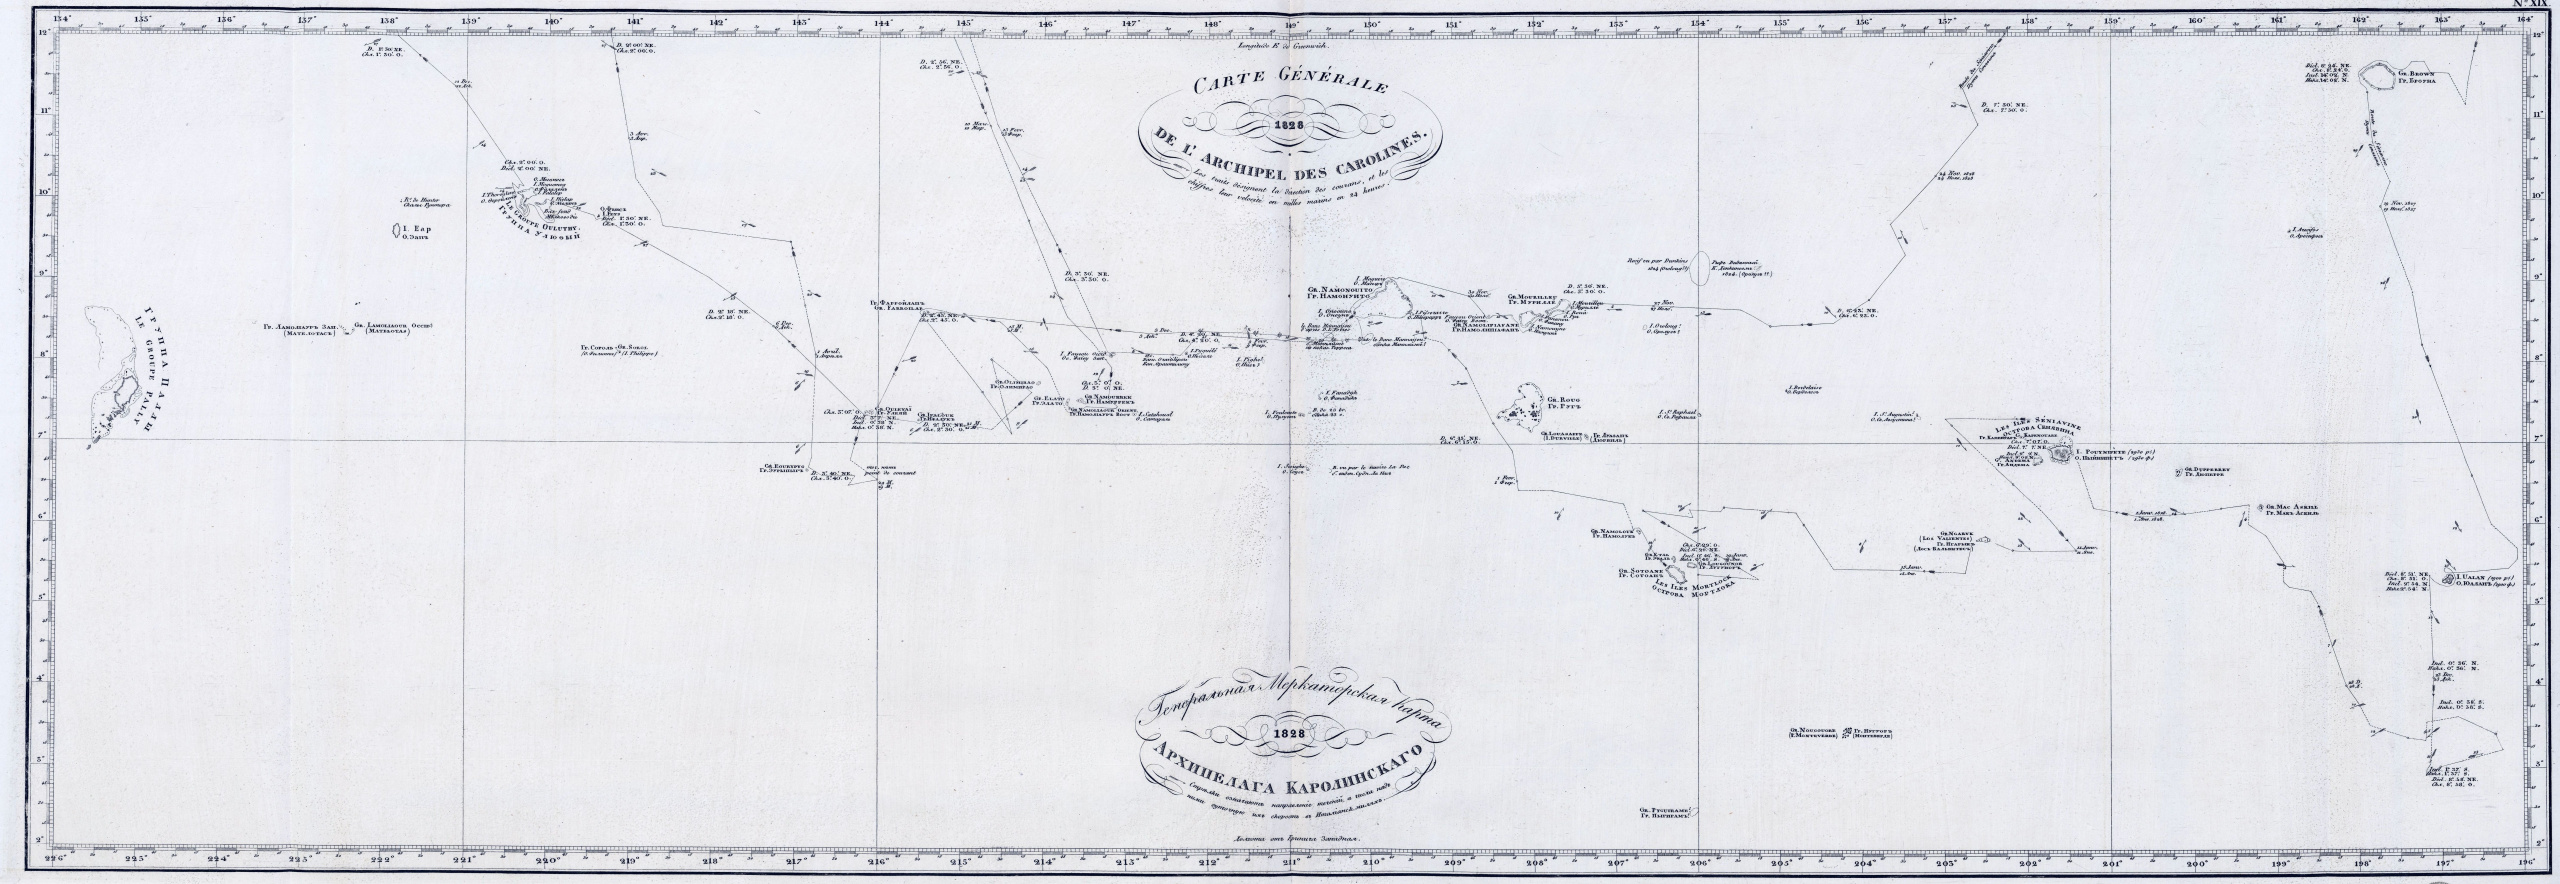 Карта Каролинских островов. Геопортал РГО